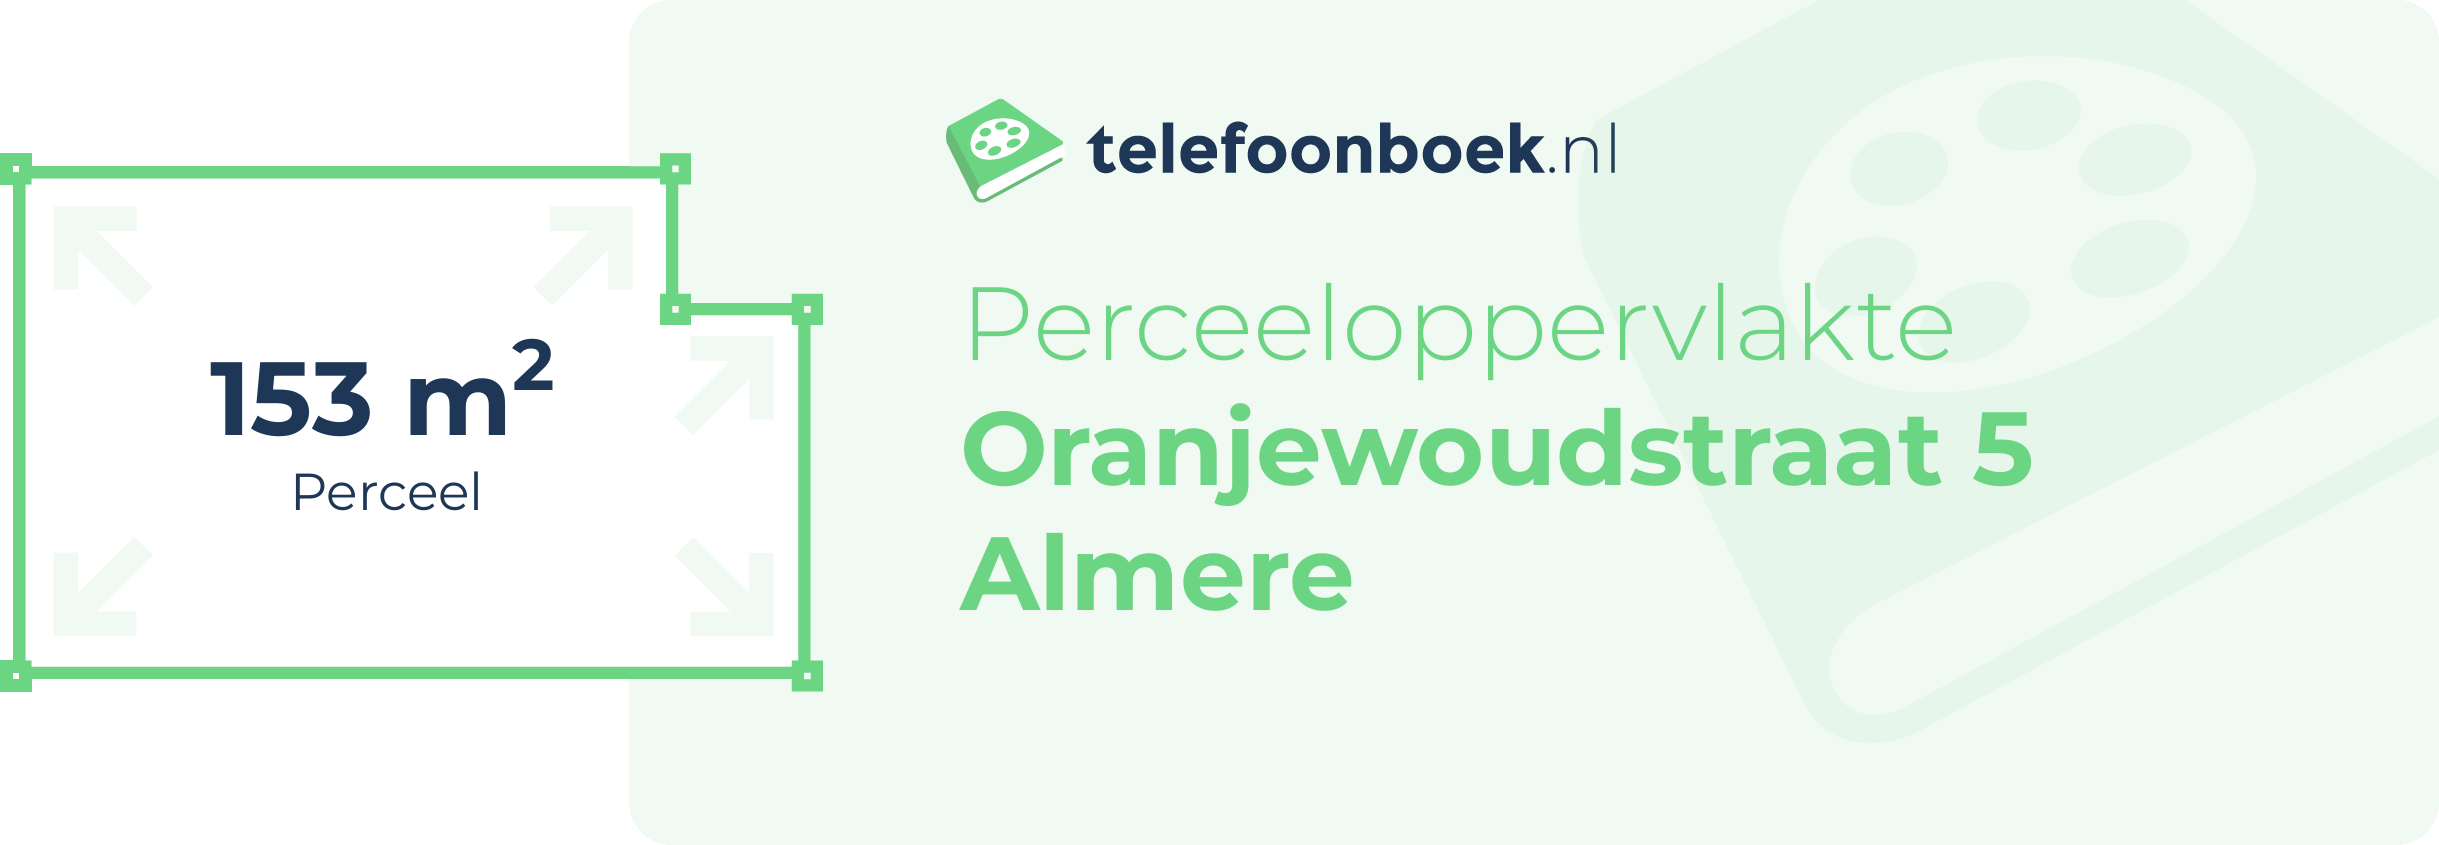 Perceeloppervlakte Oranjewoudstraat 5 Almere